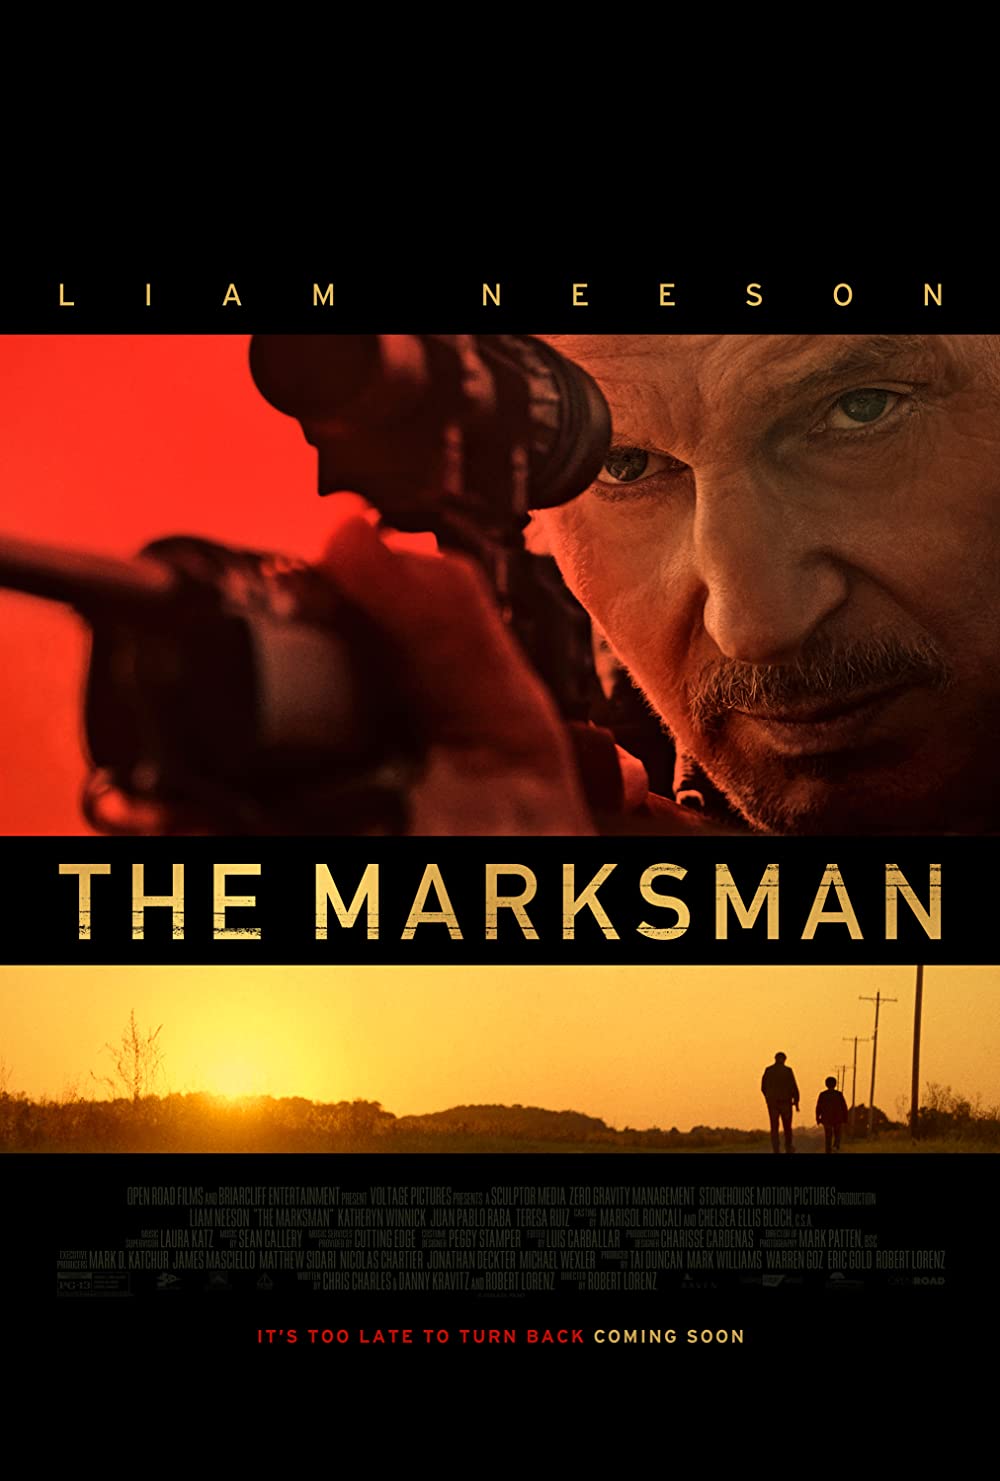 Filmbeschreibung zu The Marksman